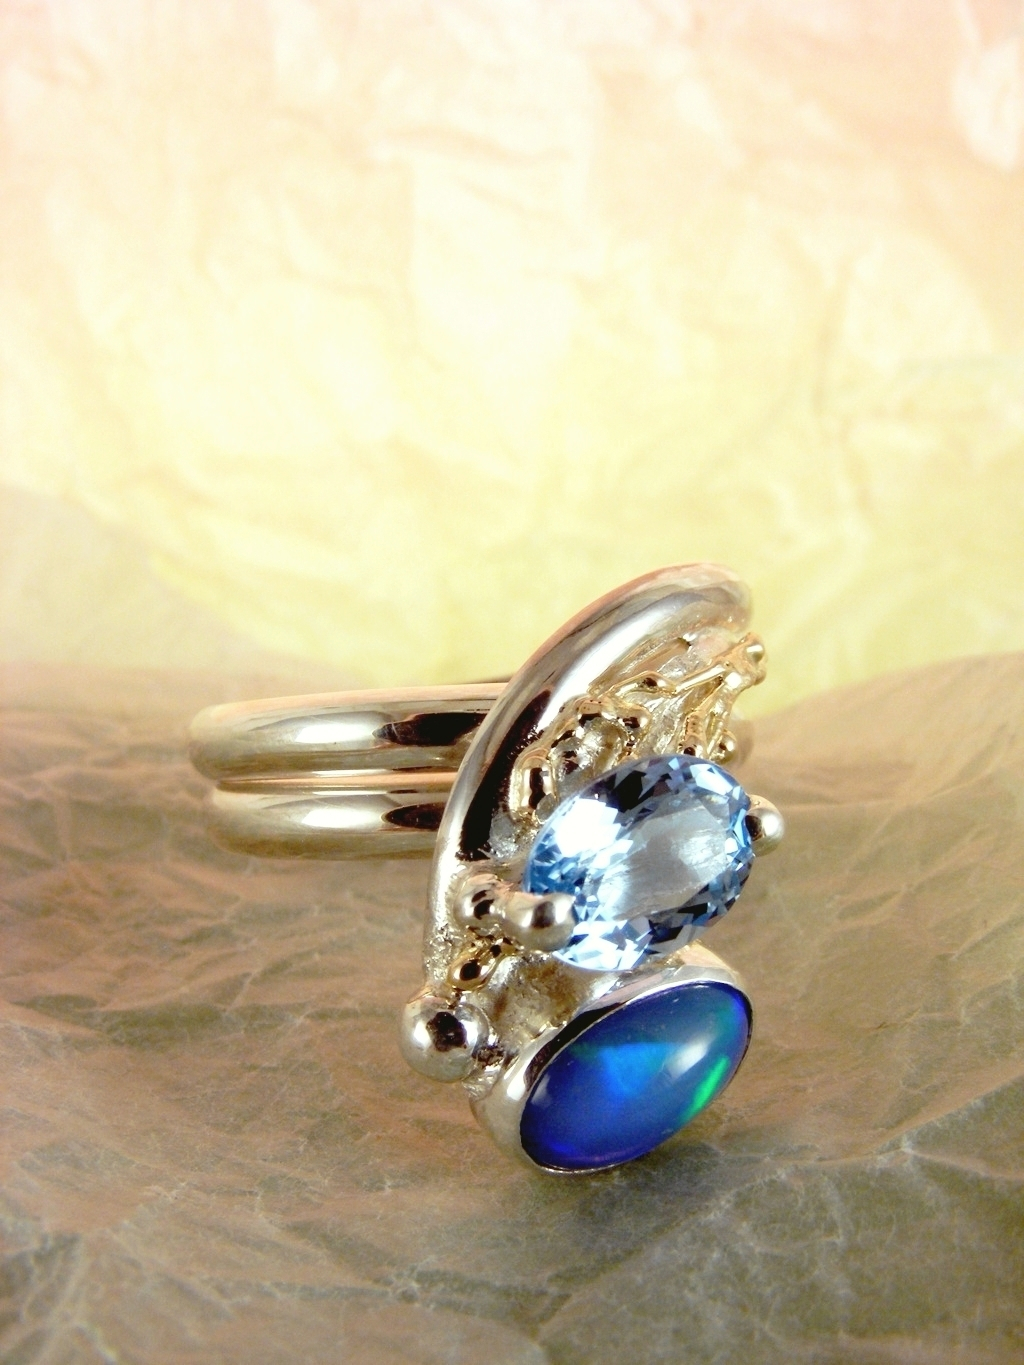 Gregory Pyra Piro handgefertigter Ring 2015, Gregory Pyra Piro Ring mit einstellbarer Größe, einzigartiger Designring aus Gold und Silber, einzigartiger Designgoldschmied mit gemischten Metallen, einzigartiger Designring mit blauem Topas und Opal, einzigartiger Designschmuck, der in Kunstgalerien gezeigt wird